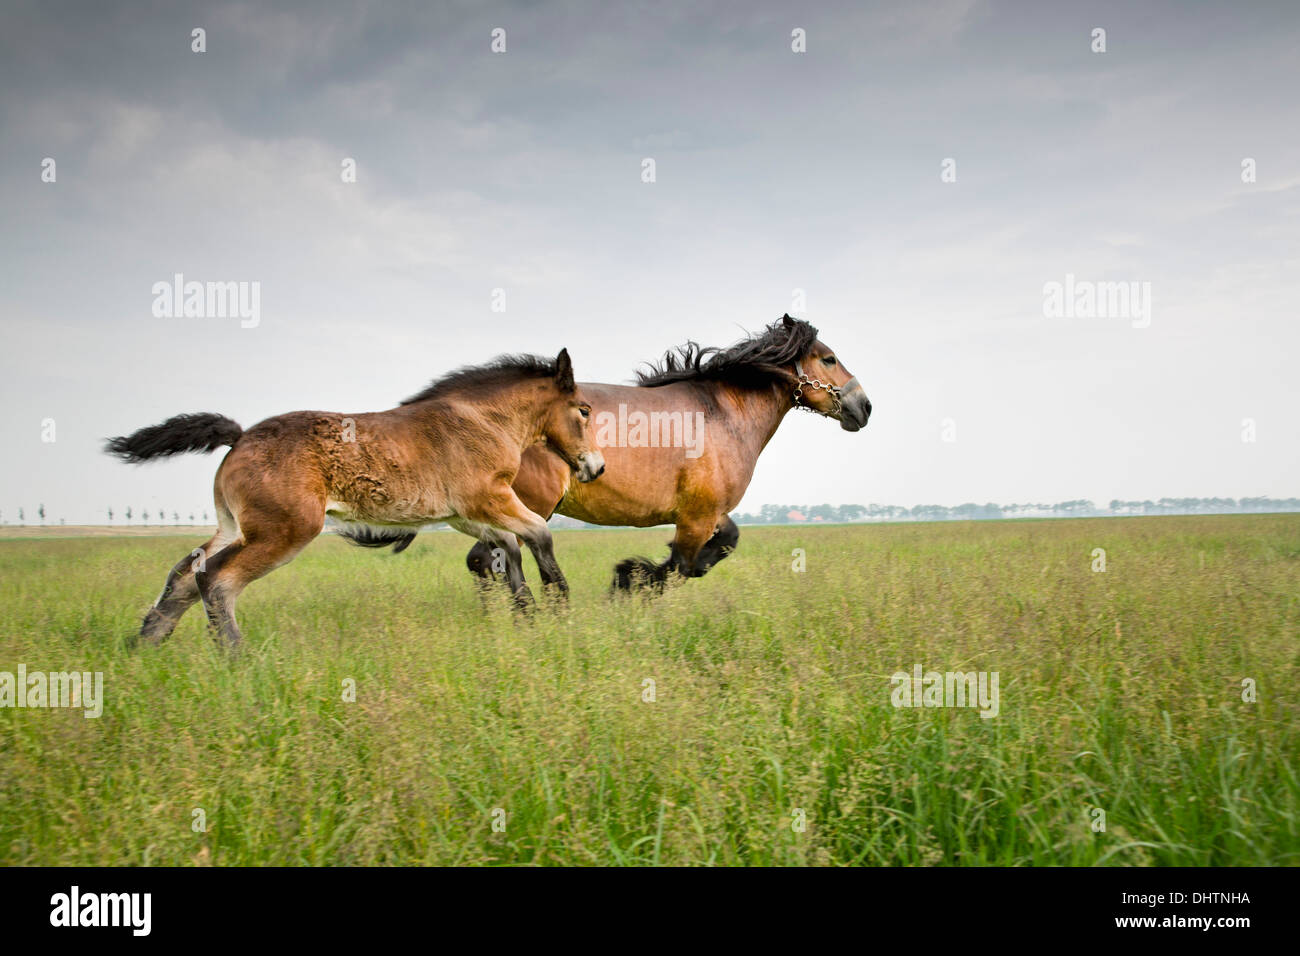 Netherlands, Noordbeemster, Beemster Polder, UNESCO World Heritage Site. Belgian or Zeeland draft horses Stock Photo